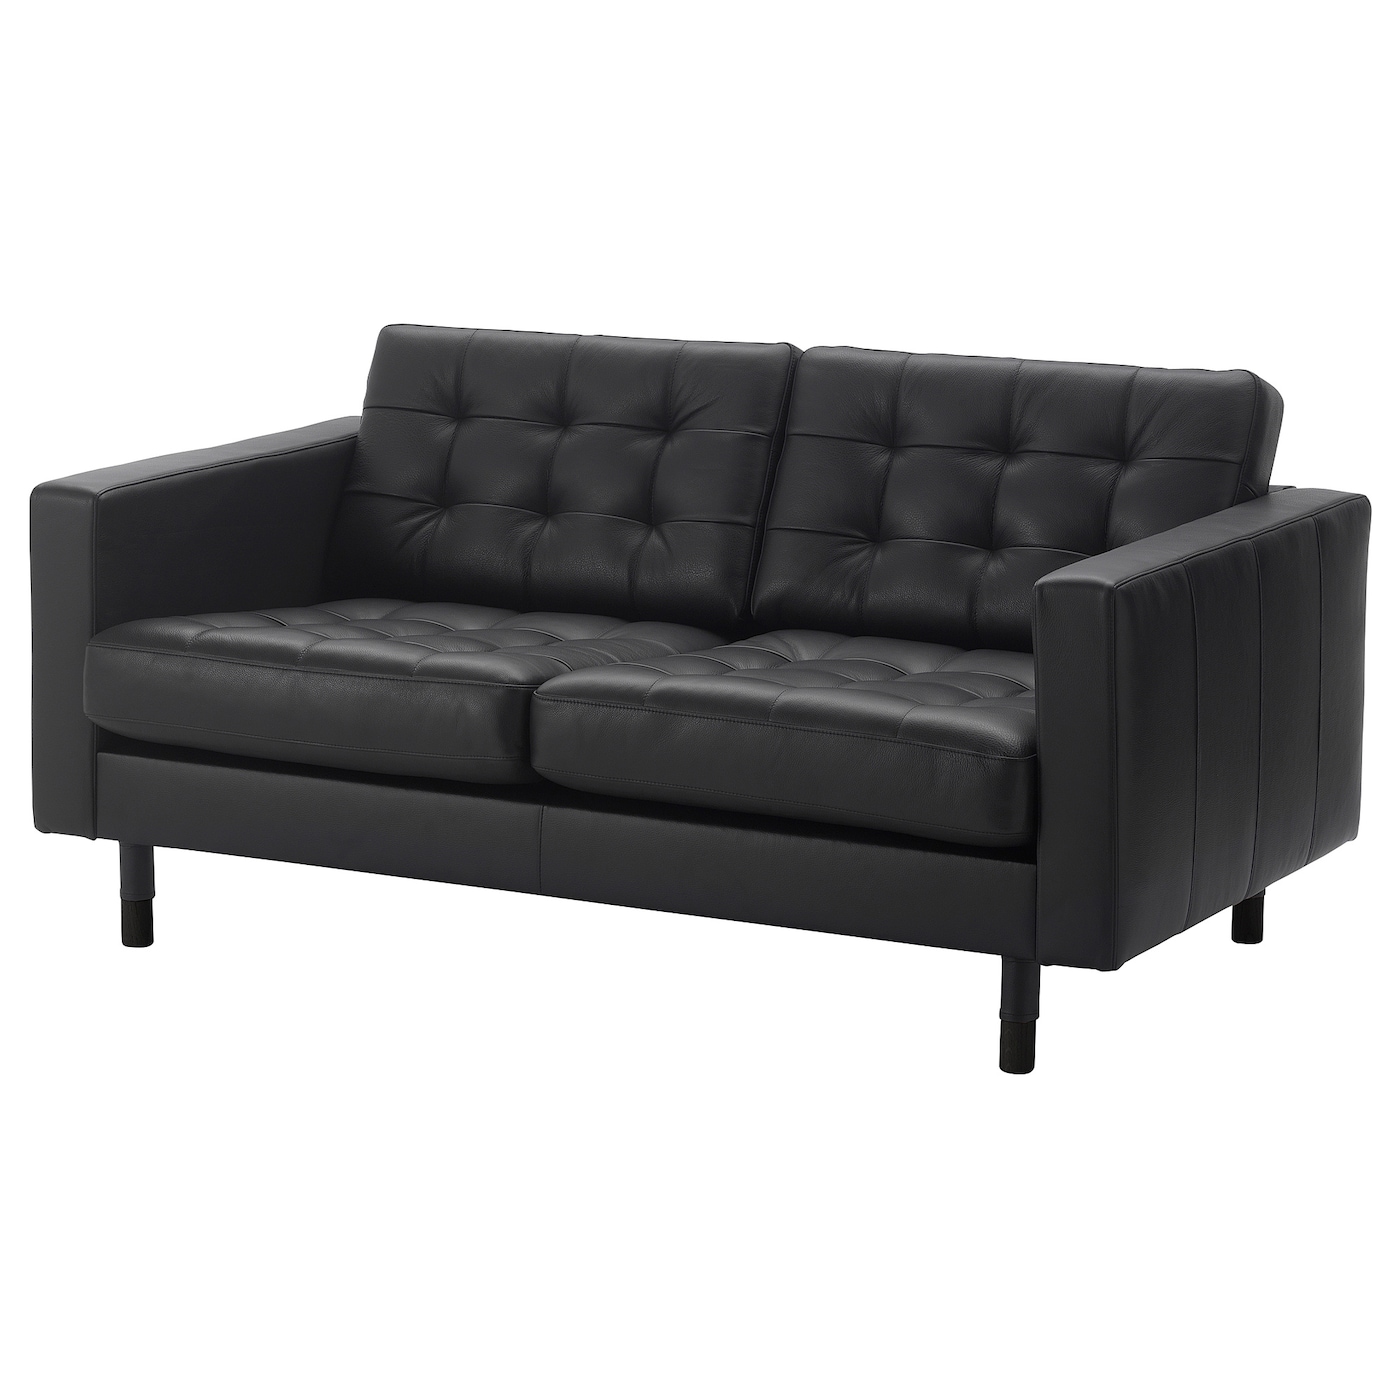 2-местный диван - IKEA LANDSKRONA, 164х89х78 см, черный, кожа, ЛАНДСКРУНА ИКЕА